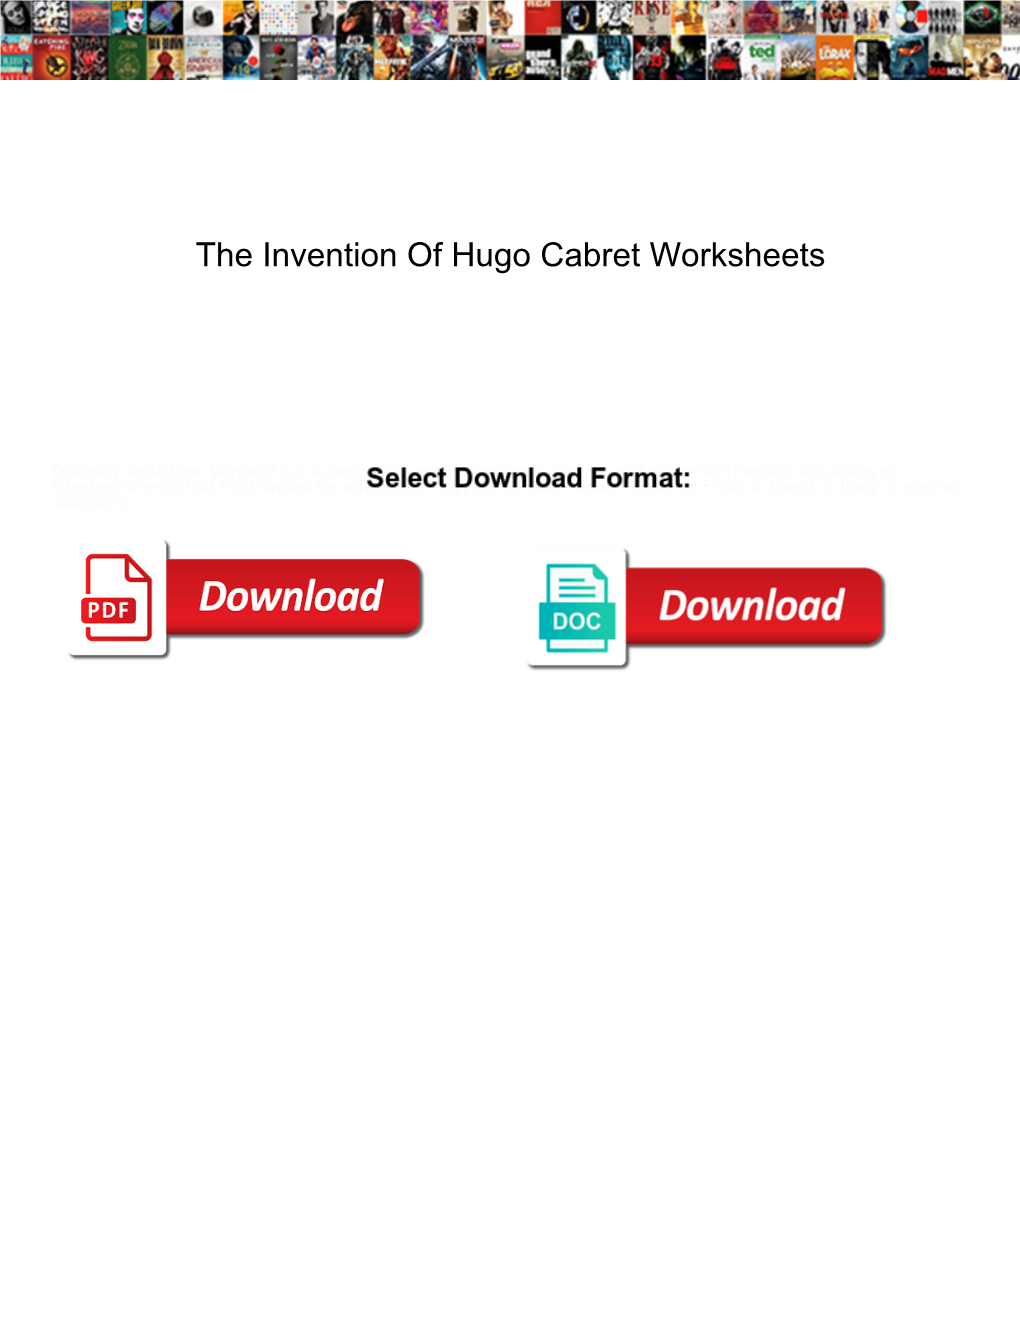 The Invention of Hugo Cabret Worksheets